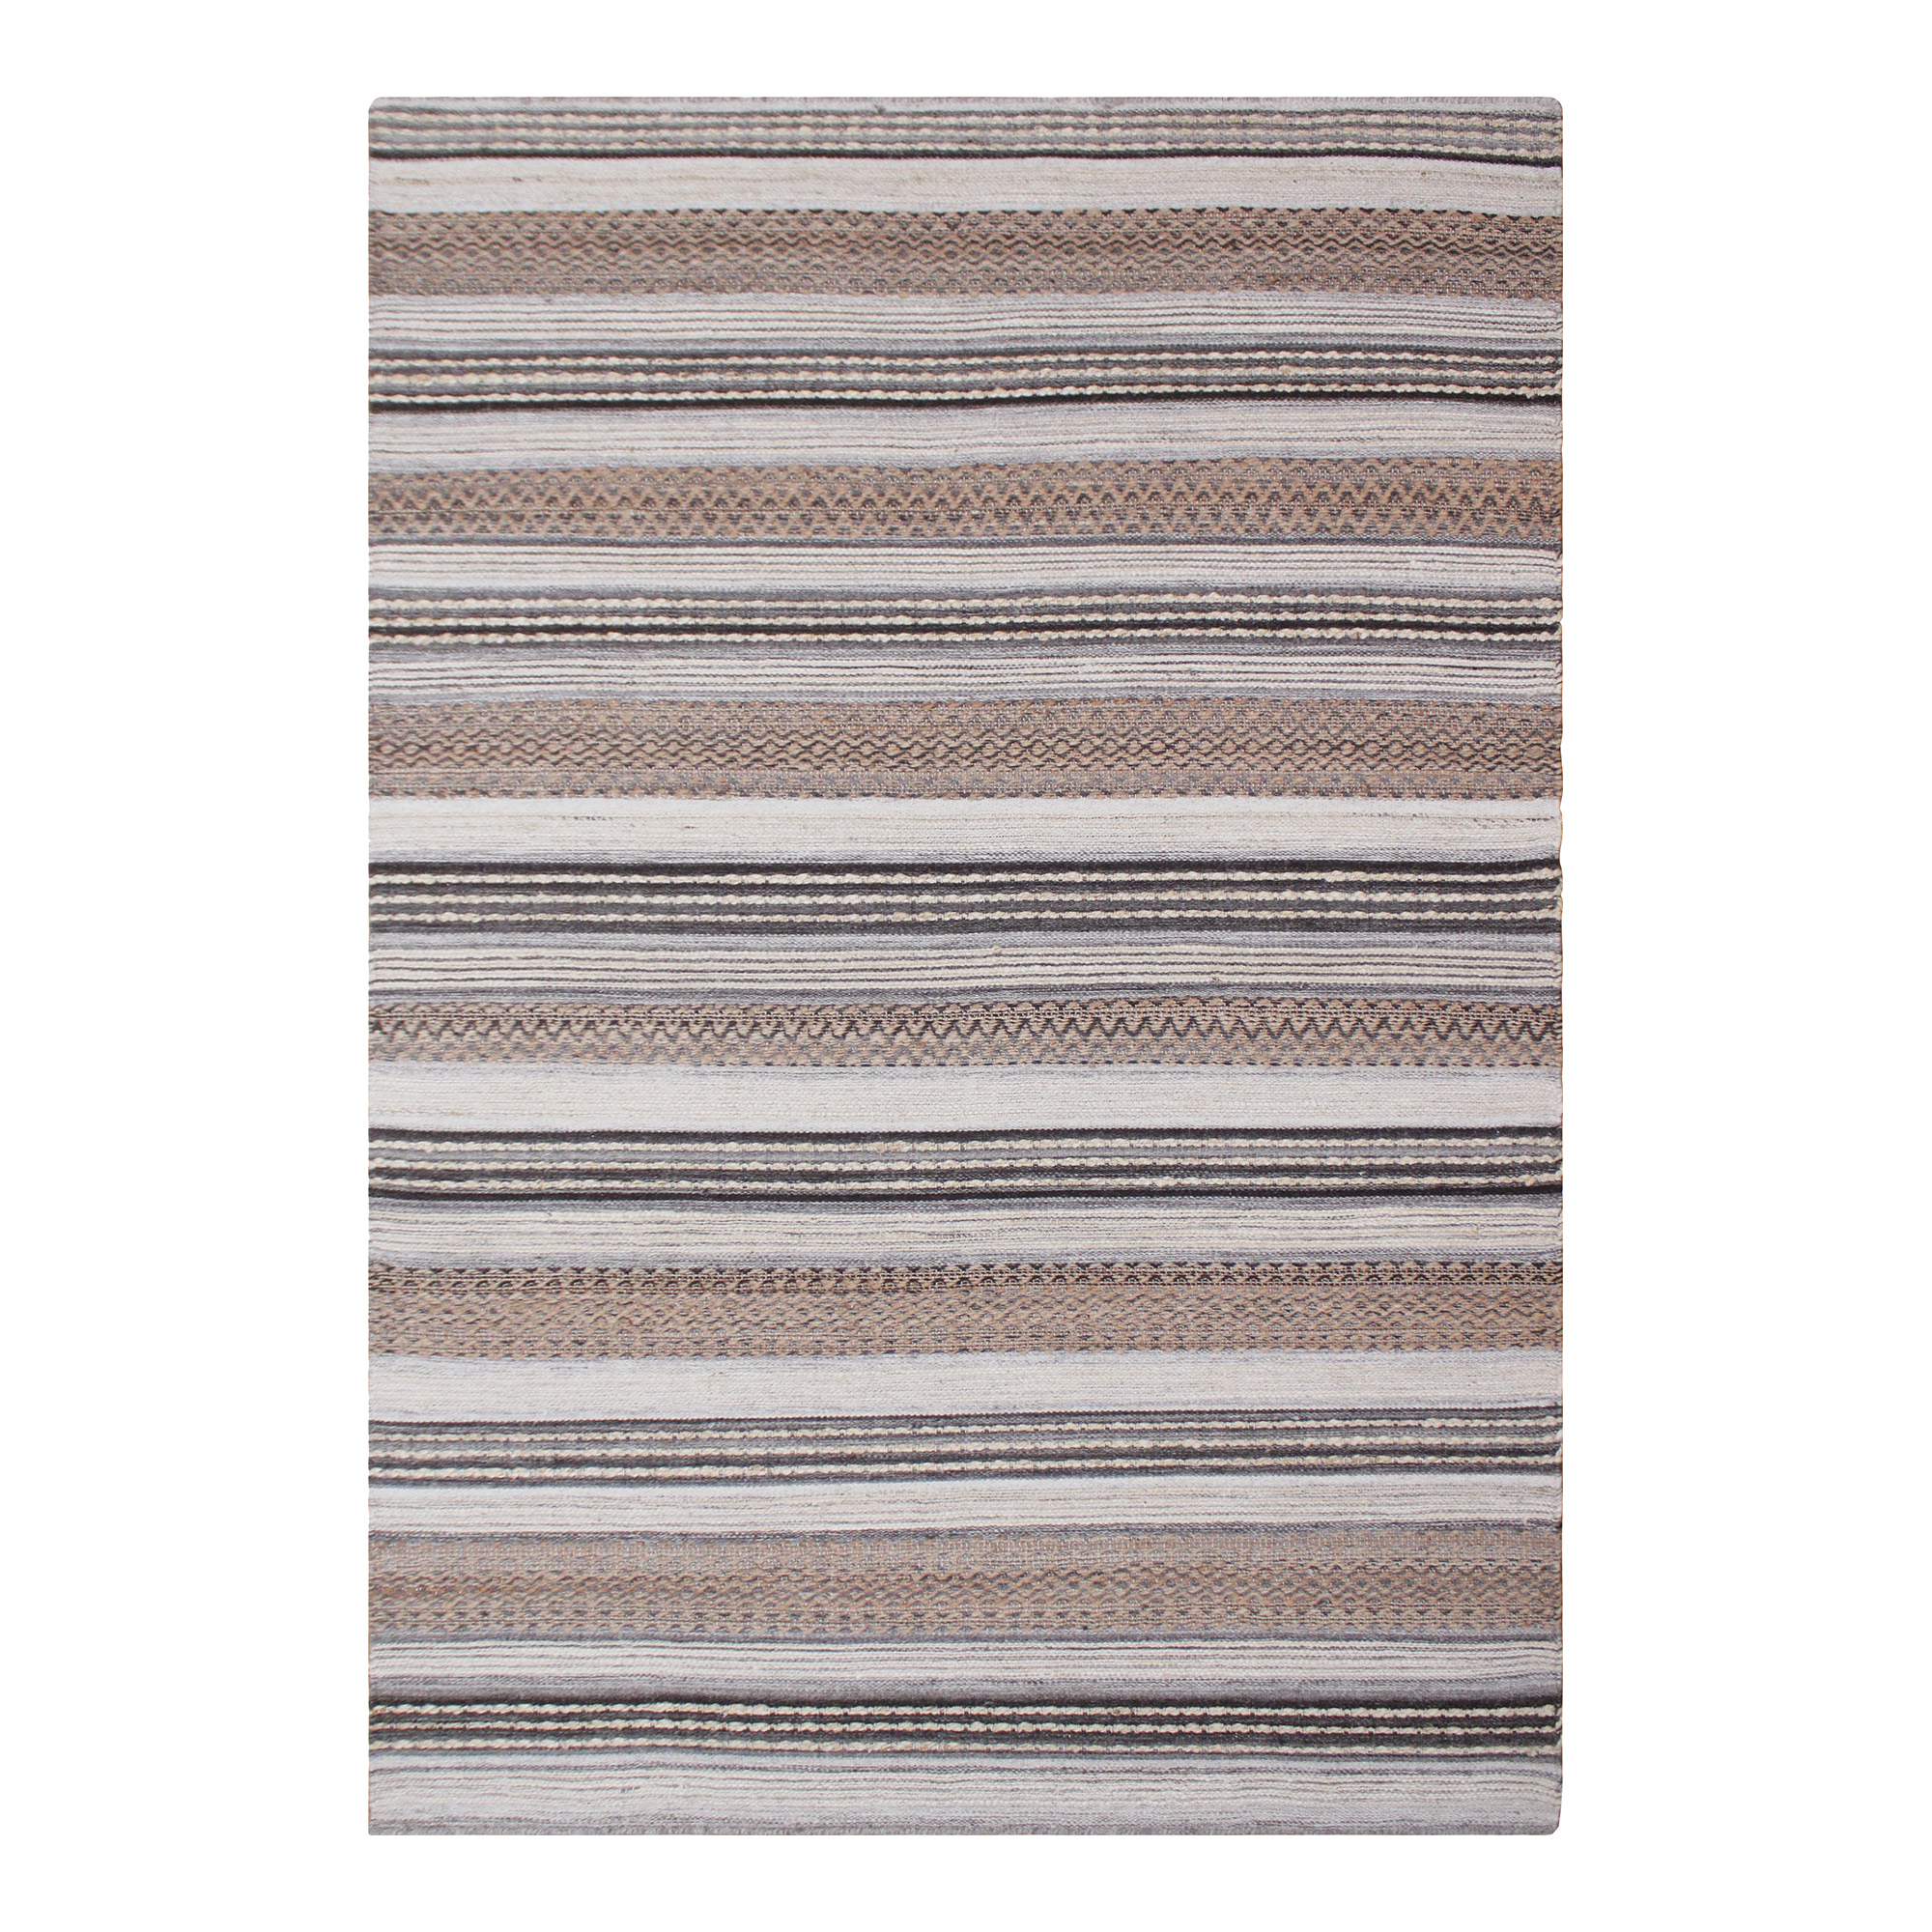 HOUSE NORDIC Morena gulvtæppe, rektangulær - natur/grå jute/uld/bomuld (200x300)